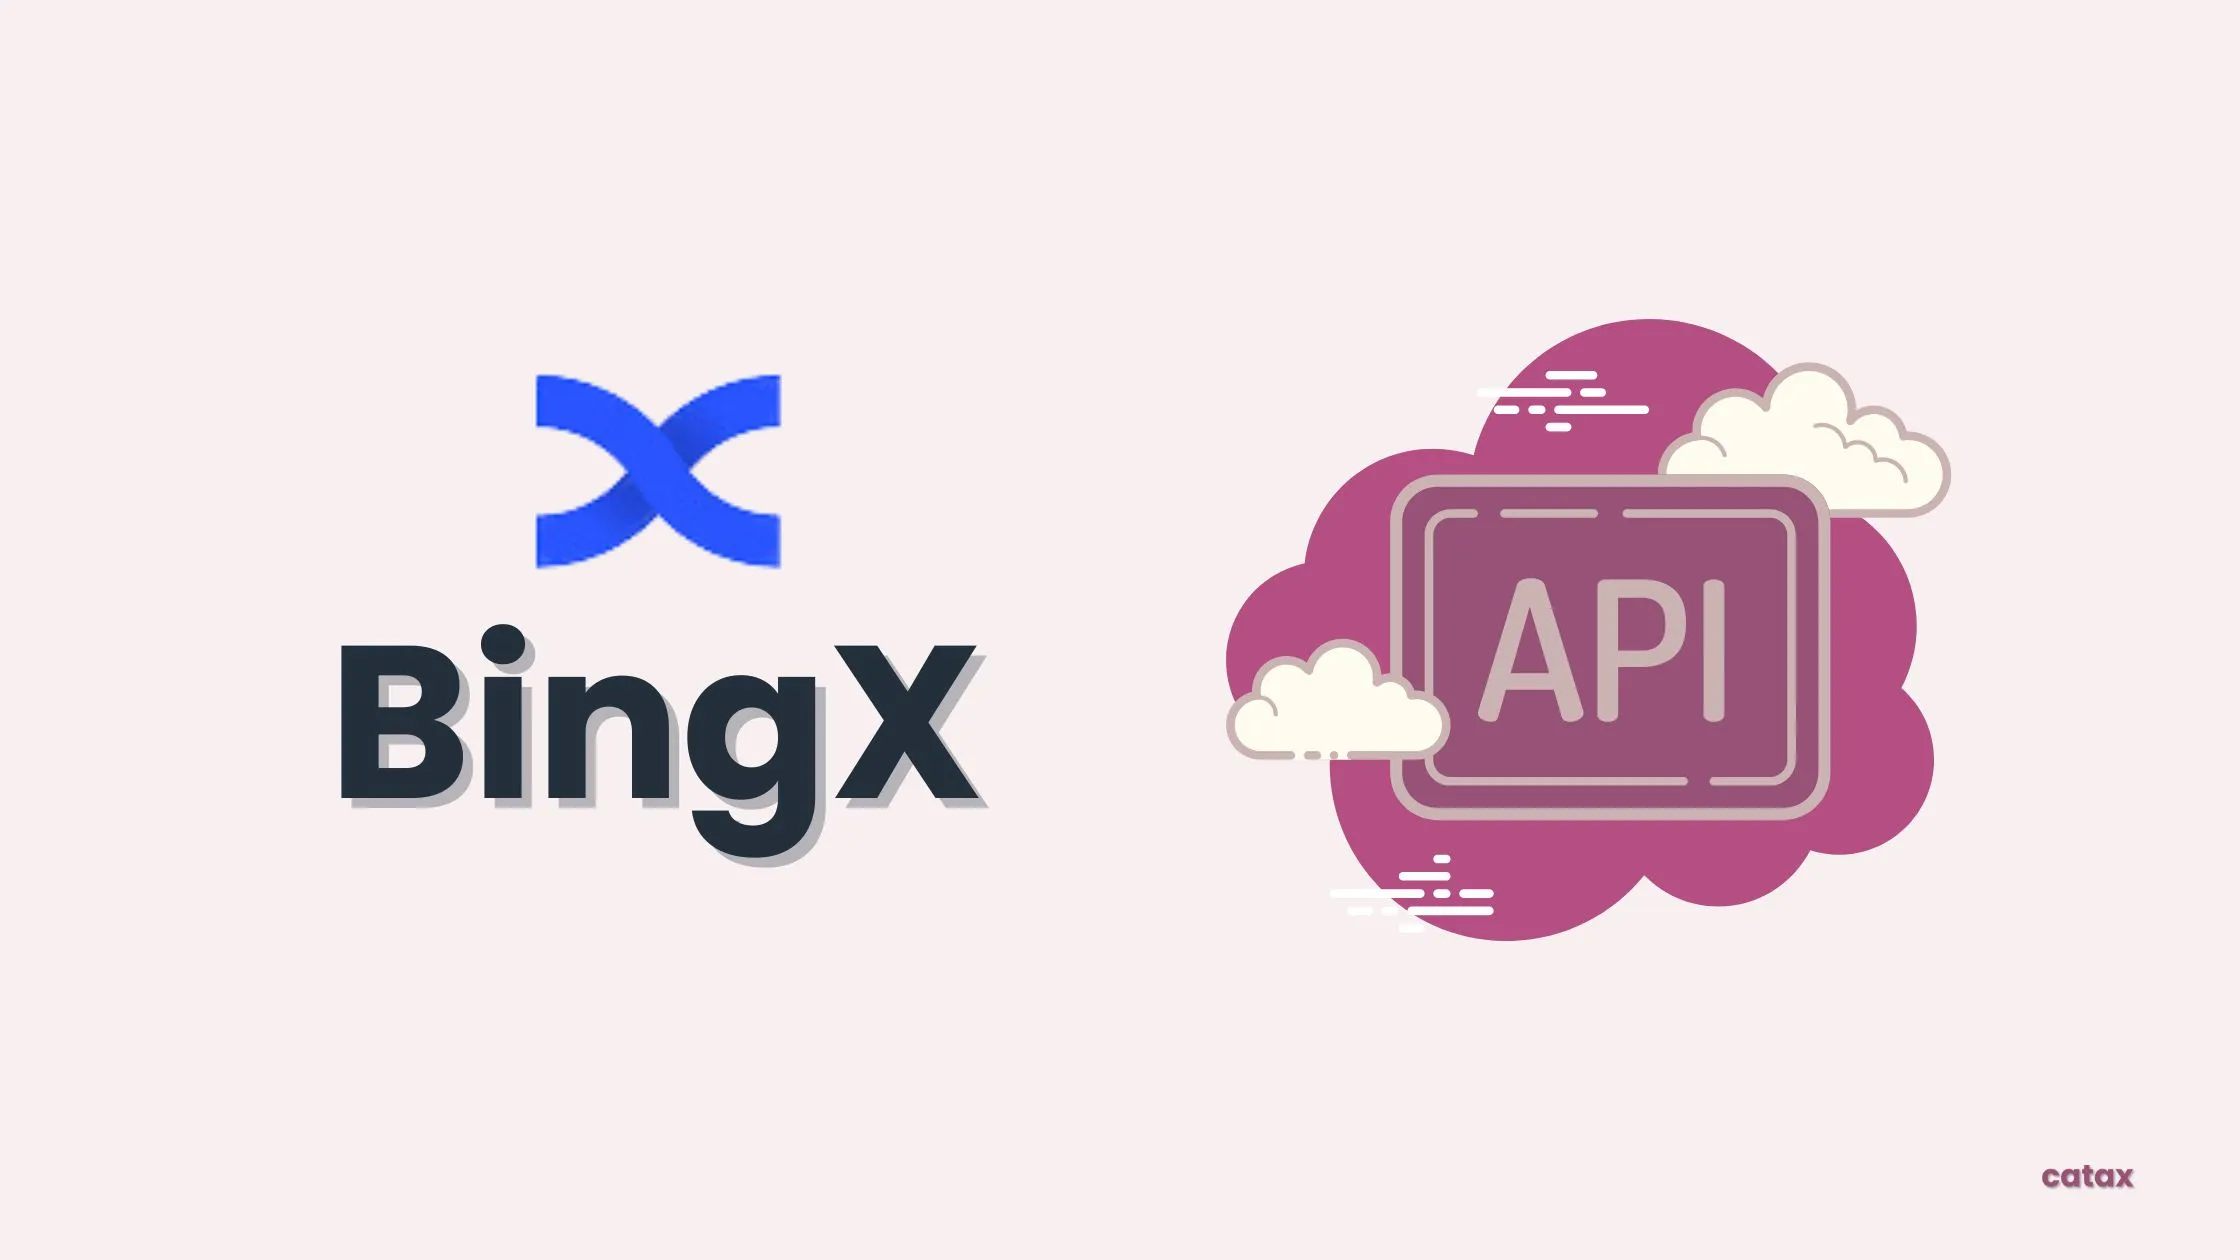 How to create BingX API?